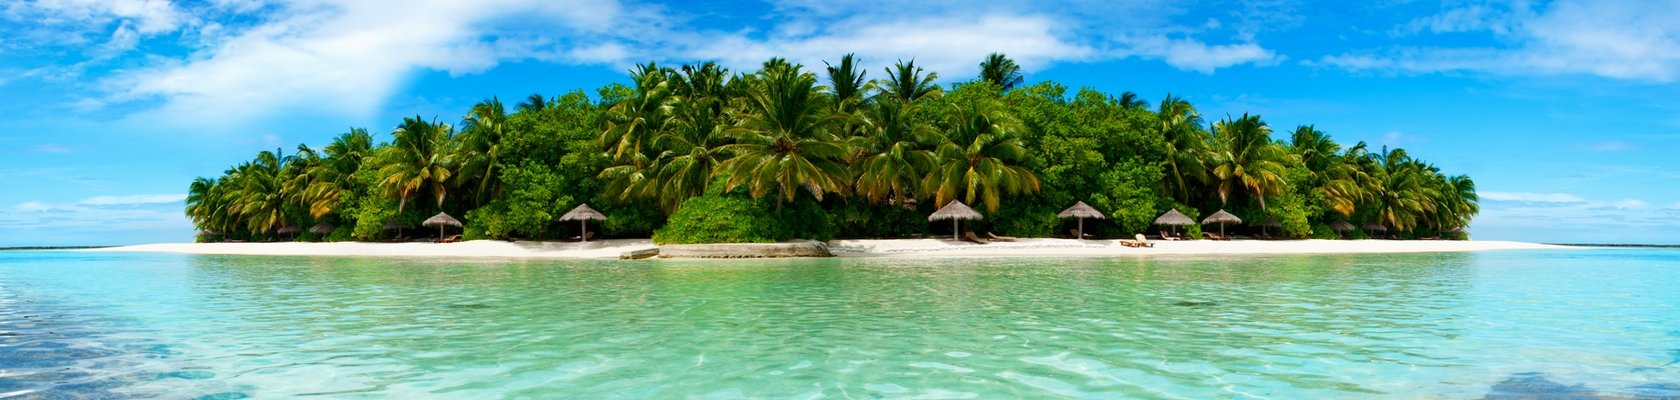 Tropische eilanden